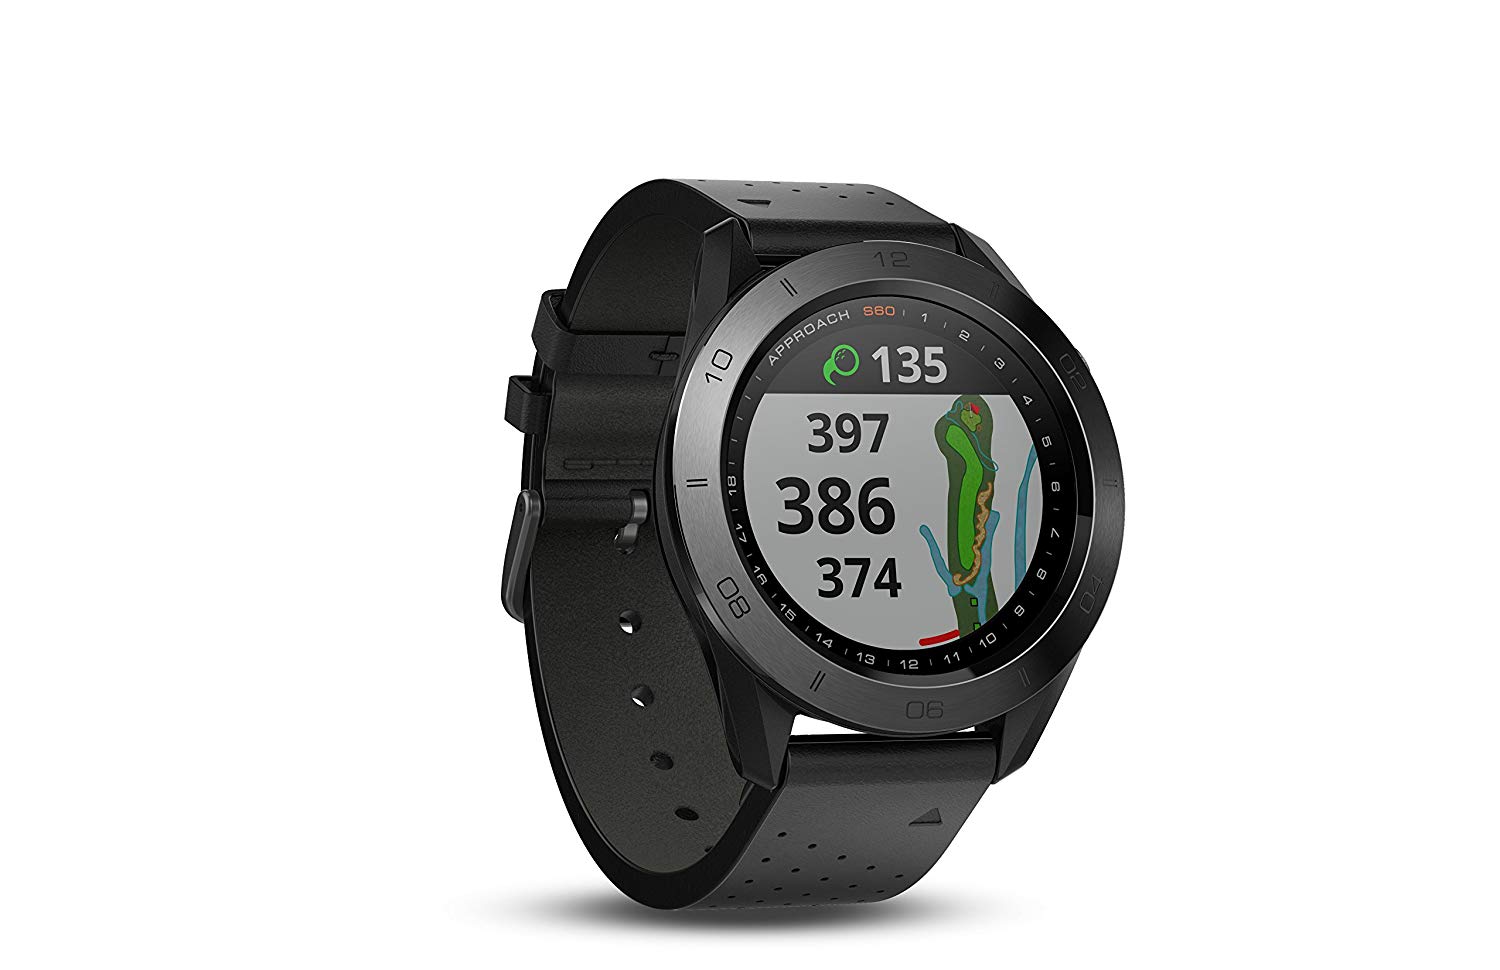 Garmin Zegarek golfowy GPS Approach S60 Premium z czarnym skórzanym paskiem